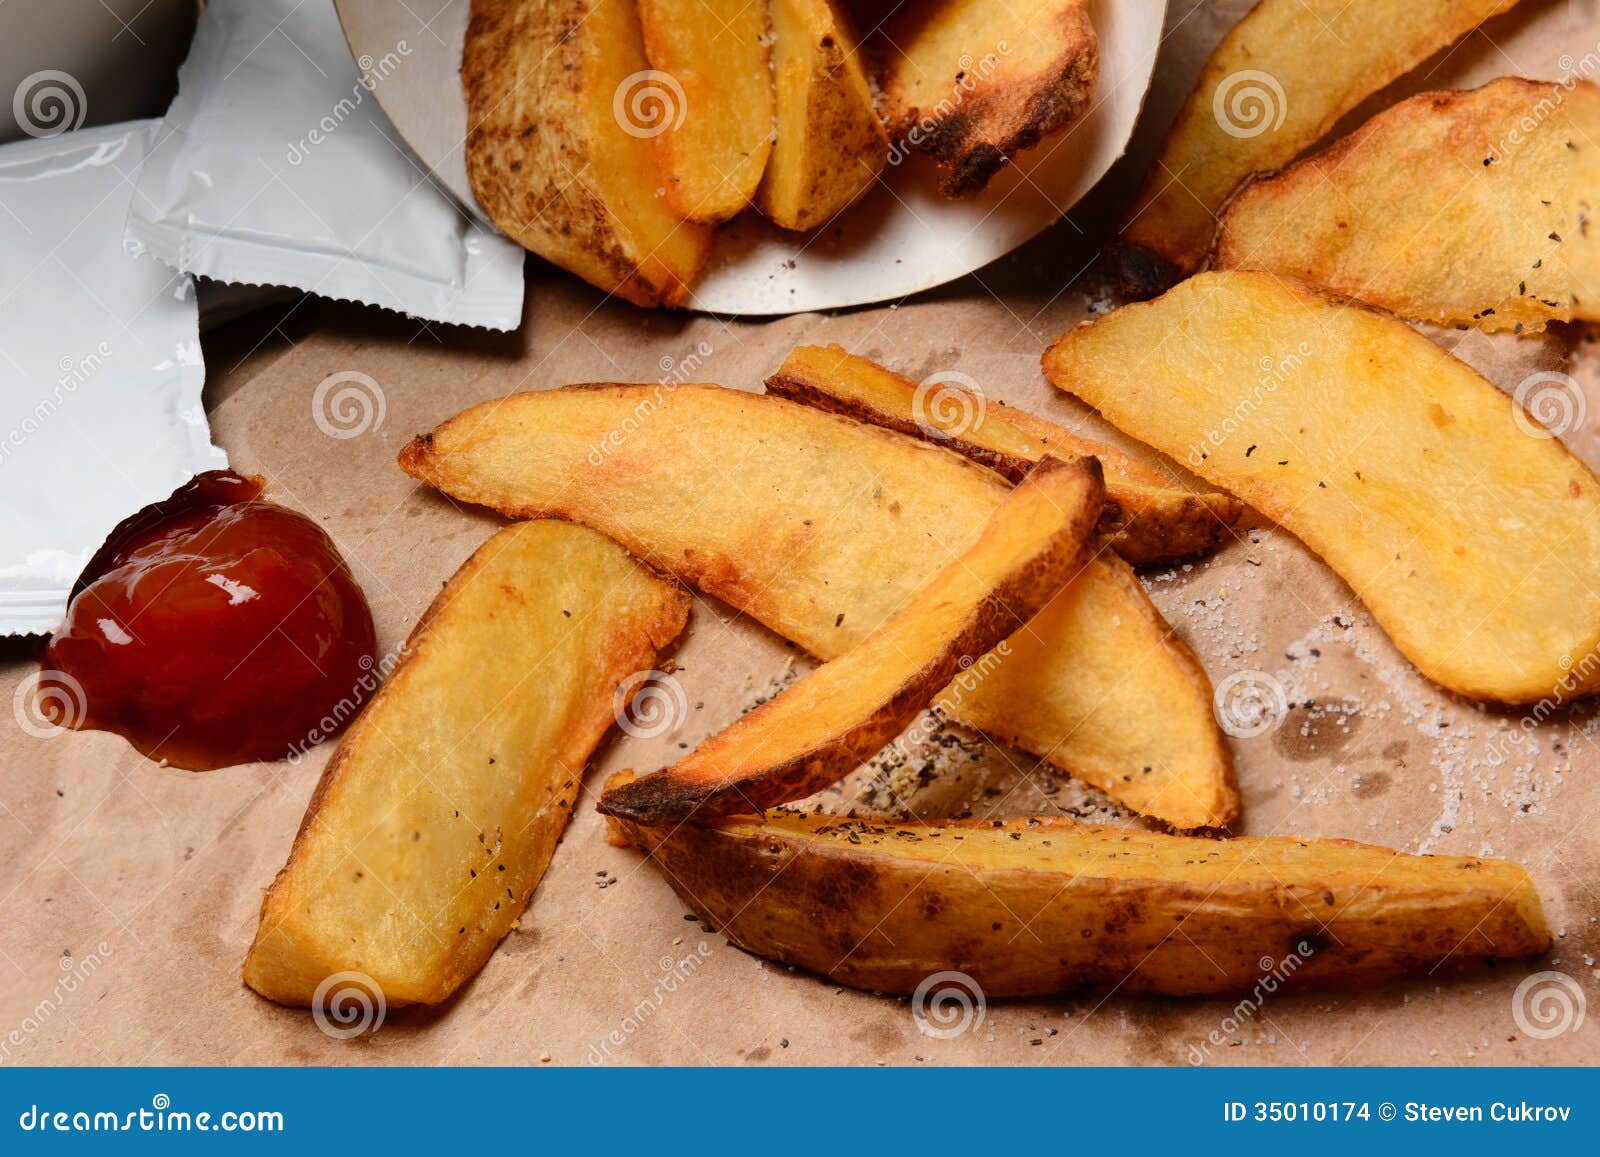 Batatas fritas com ketchup no saco de Brown. O close up de certas batatas fritas derramou em um saco marrom. Dollop e pacotes da ketchup com sal e pimenta. Formato horizontal que enche o quadro.